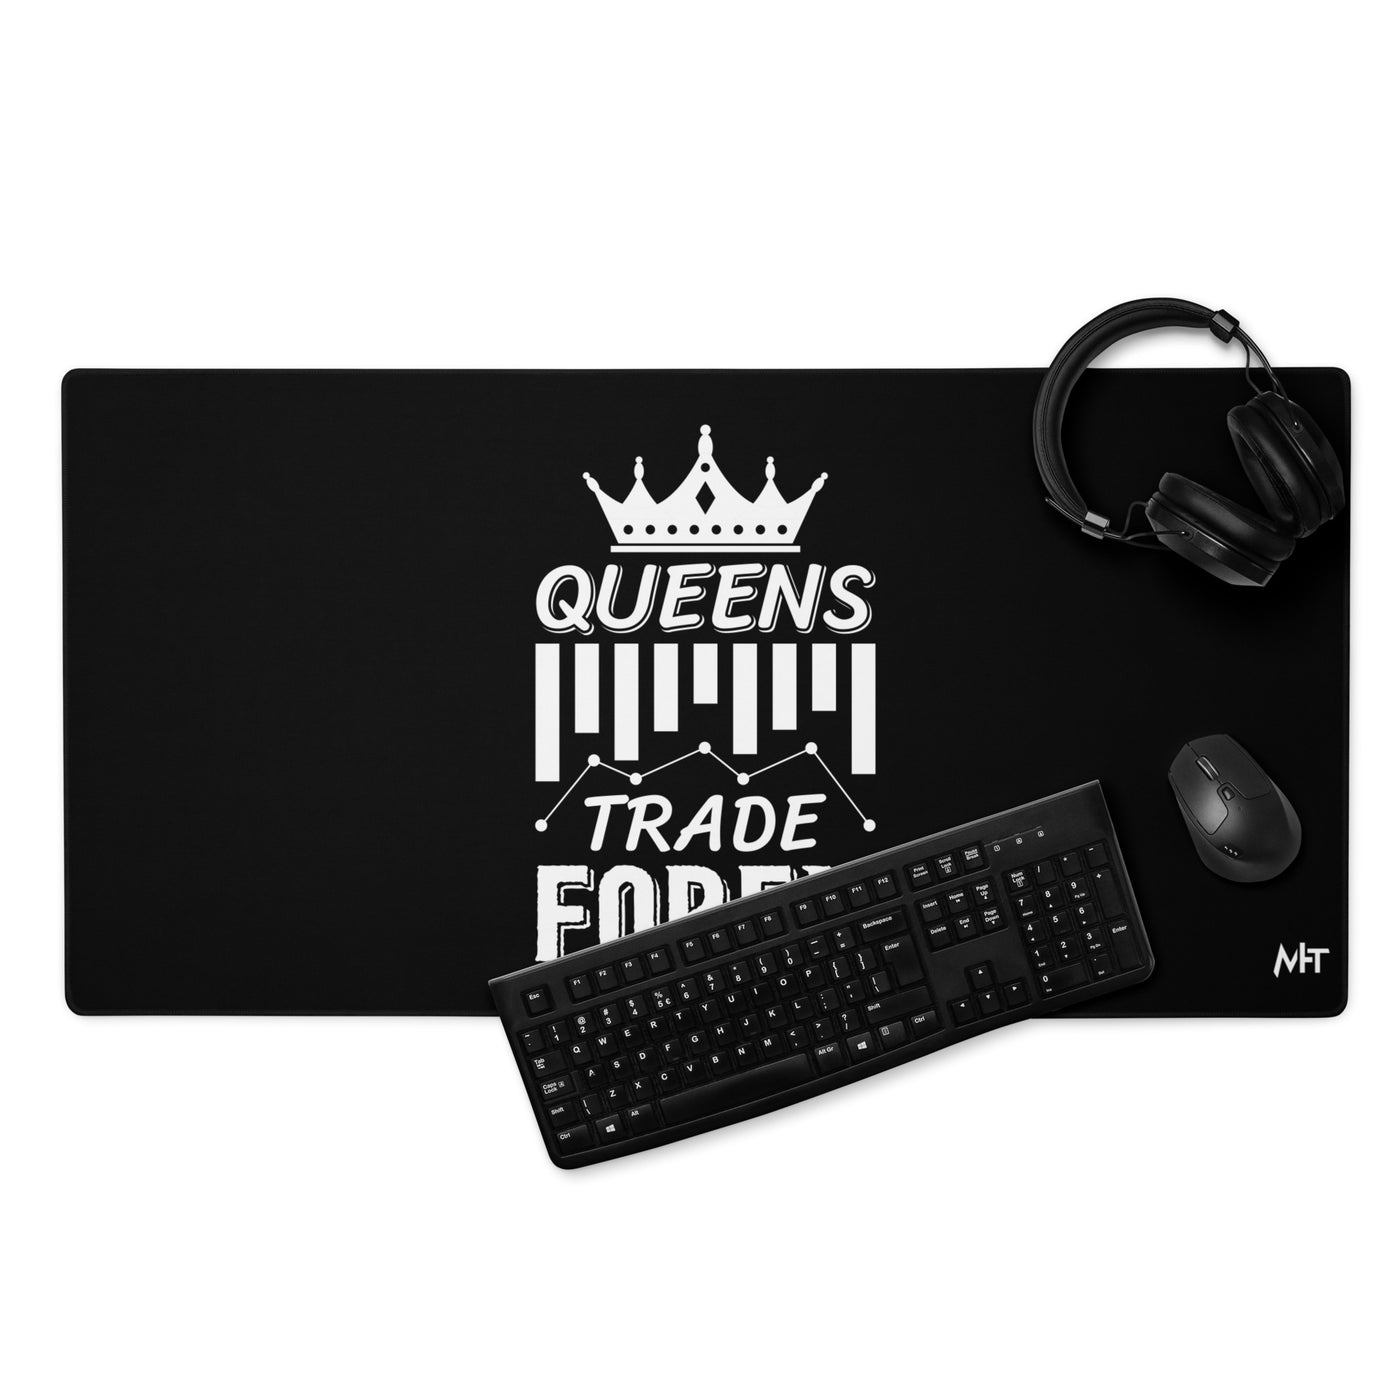 Queens Trade Forex - Desk Mat